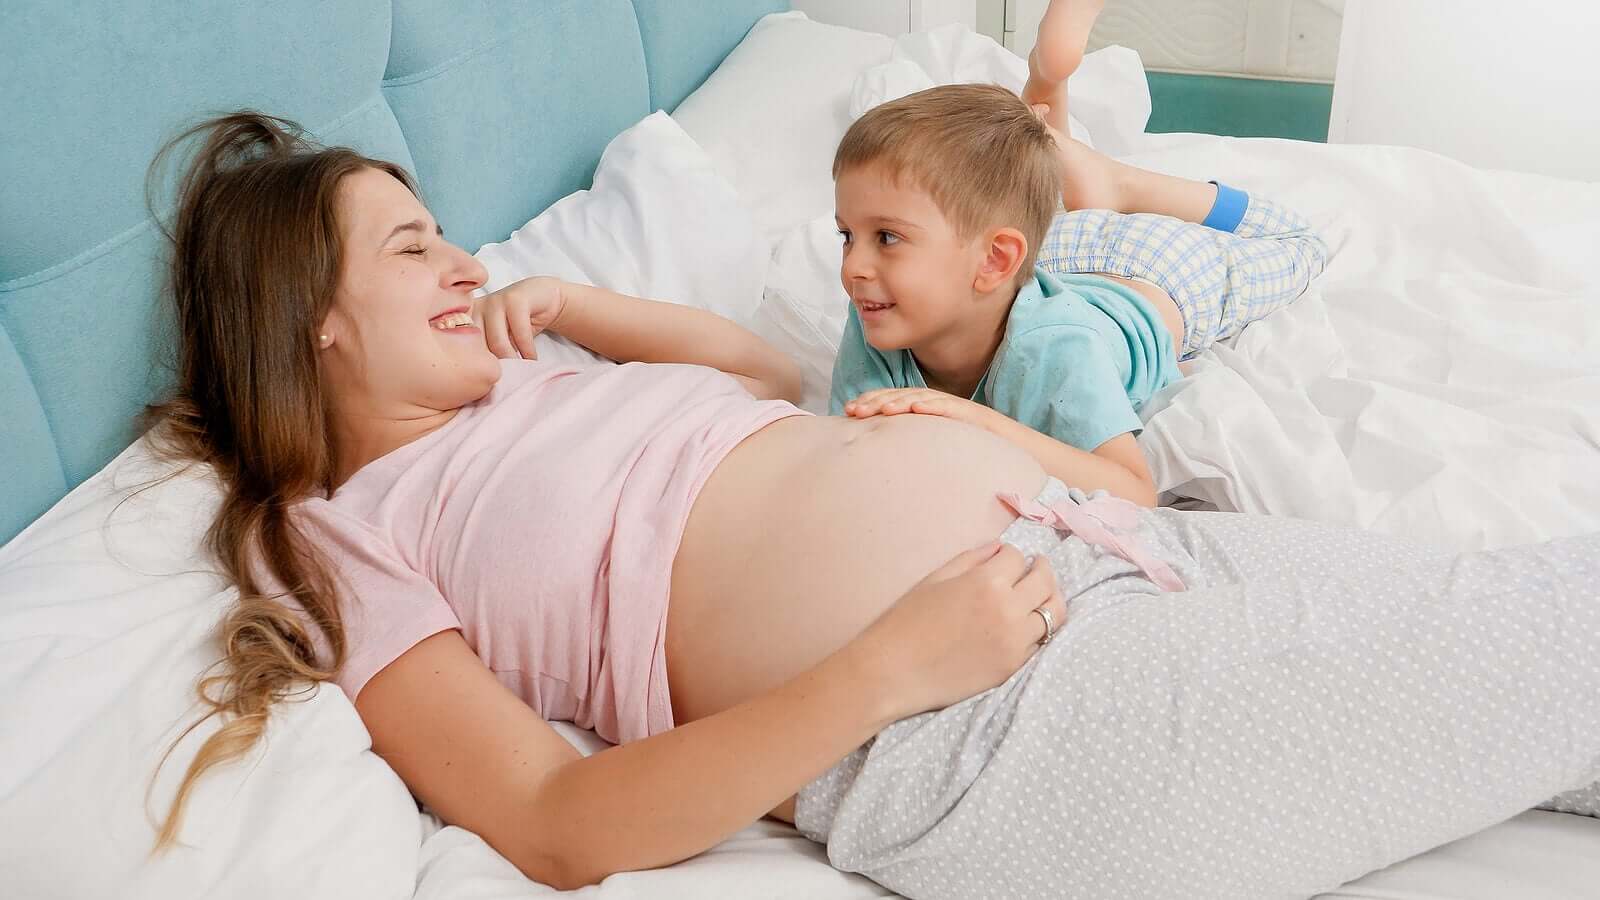 Ein neues Geschwisterchen - schwangere Frau mit ihrem älteren Sohn